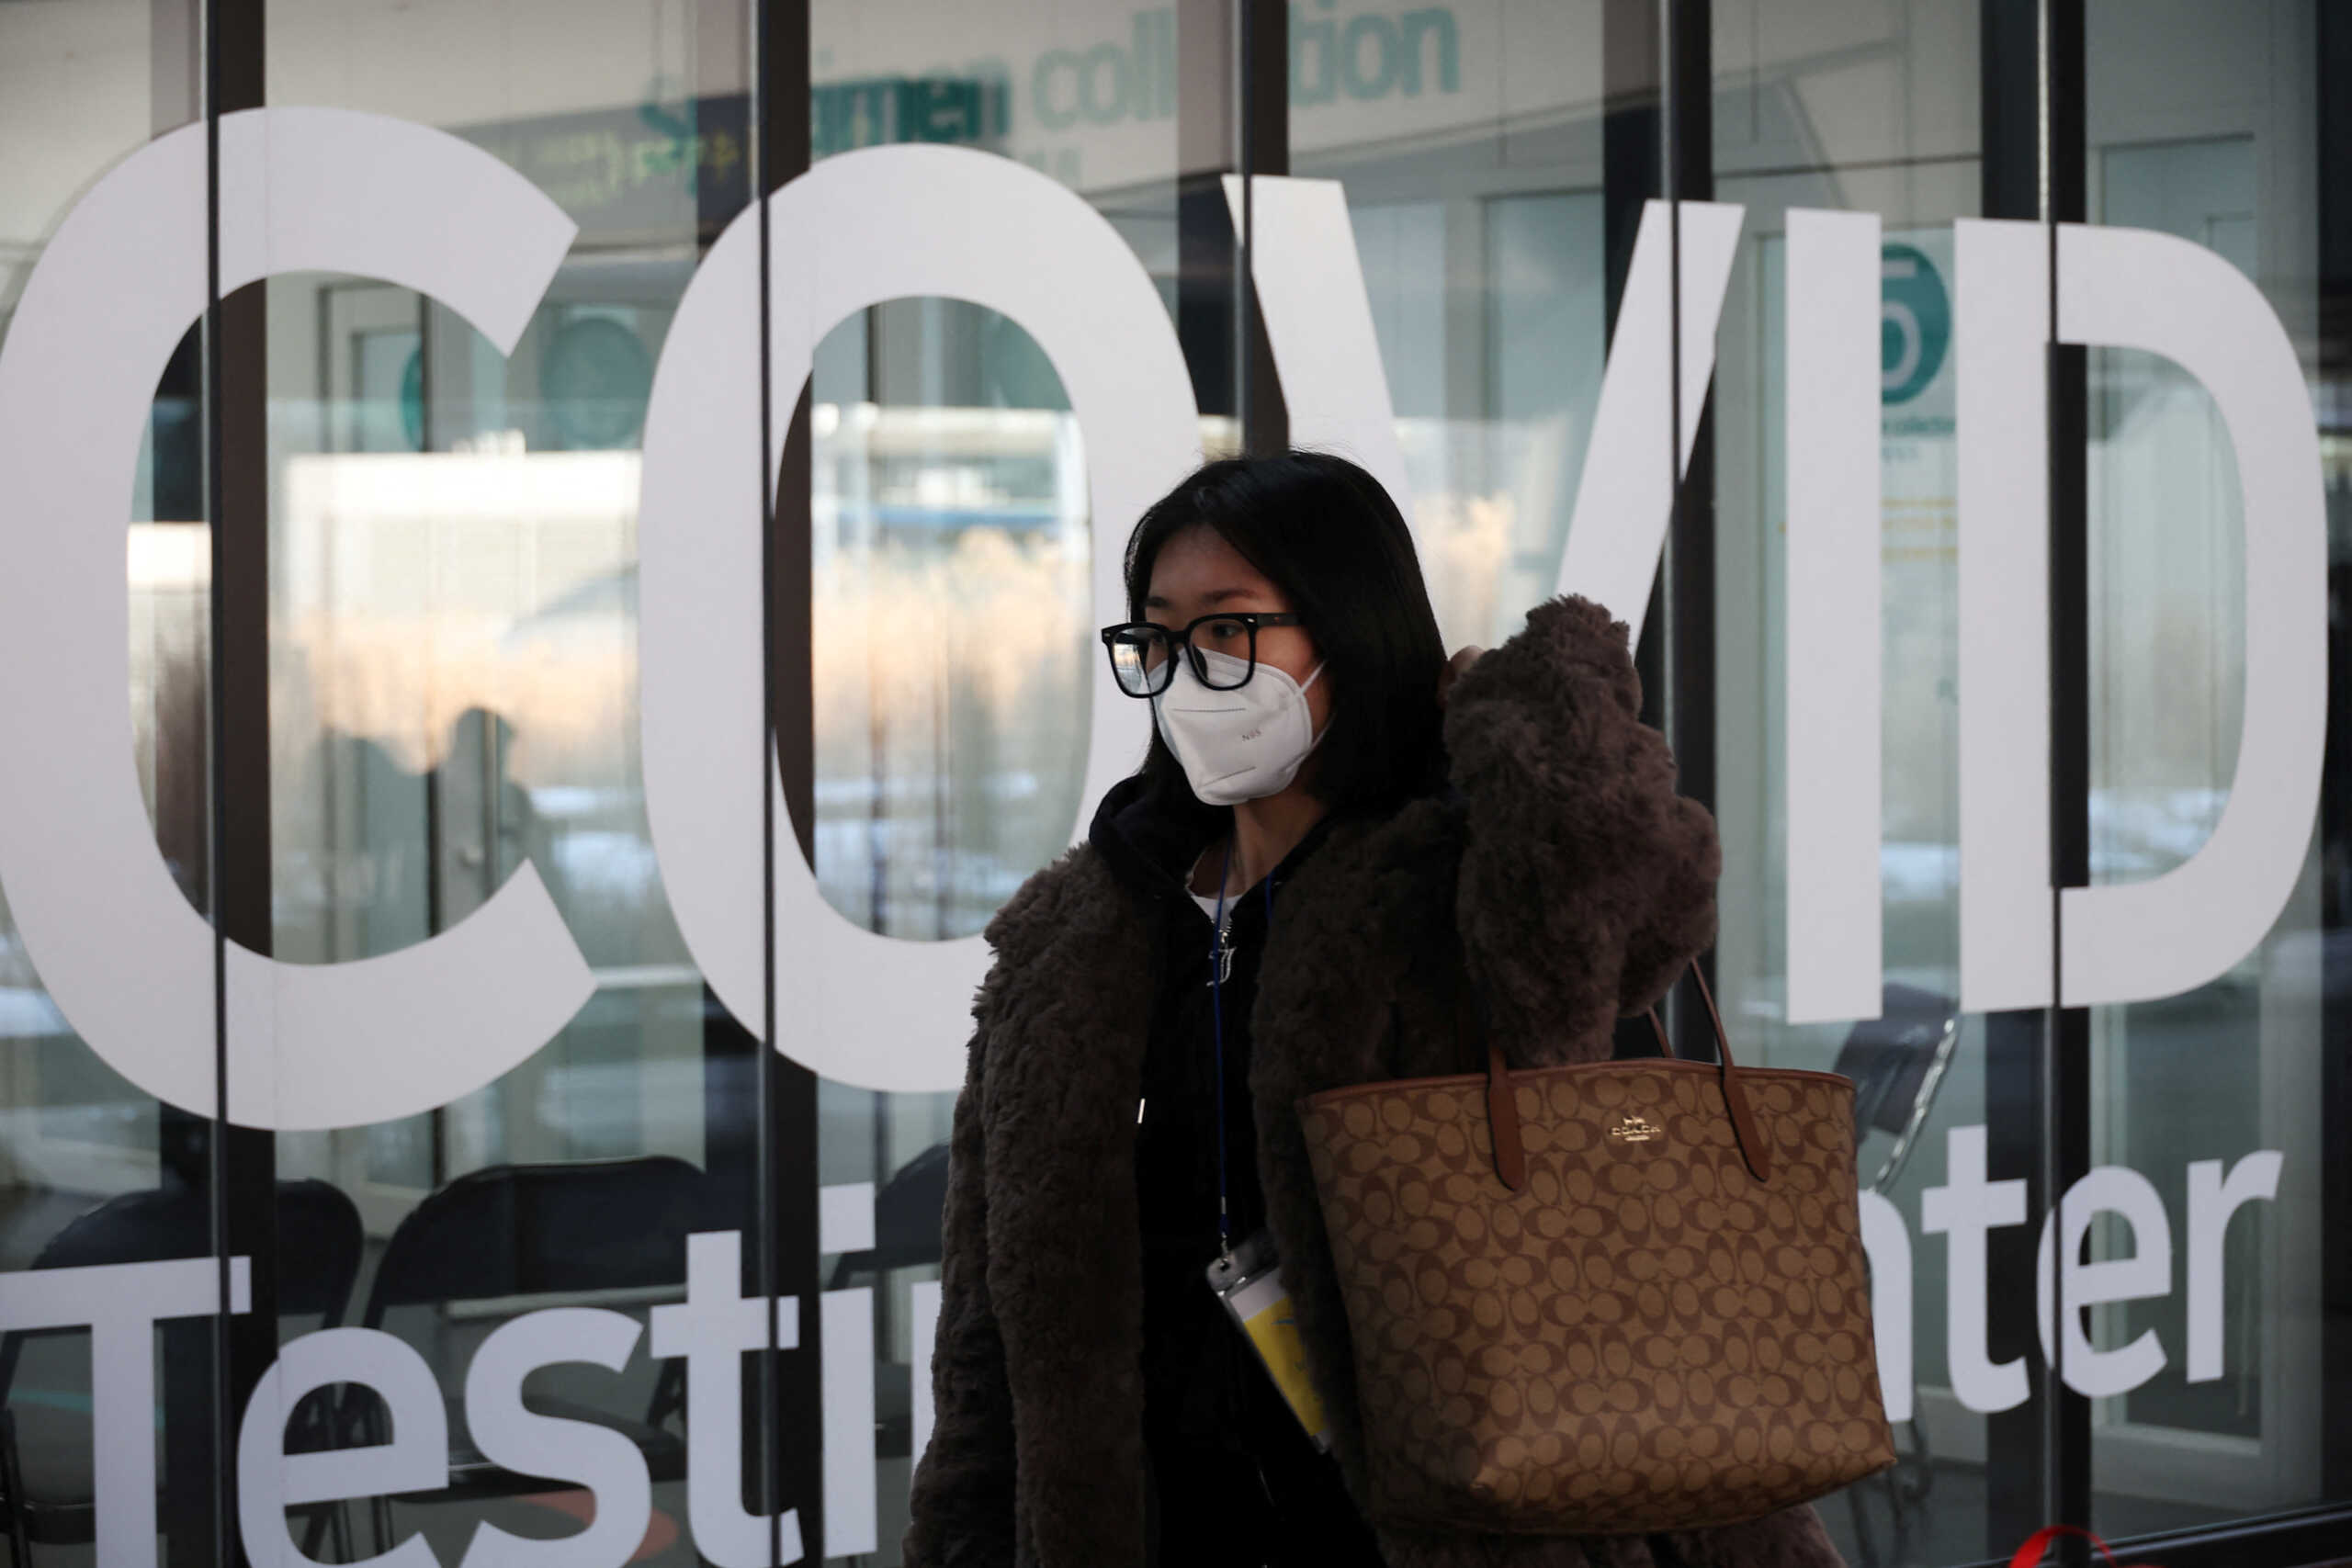 Σύσκεψη στο Μαξίμου για κορονοϊό: Αρνητικό τεστ 48 ωρών και υποχρεωτική χρήση μάσκας για όσους θα έρχονται από την Κίνα